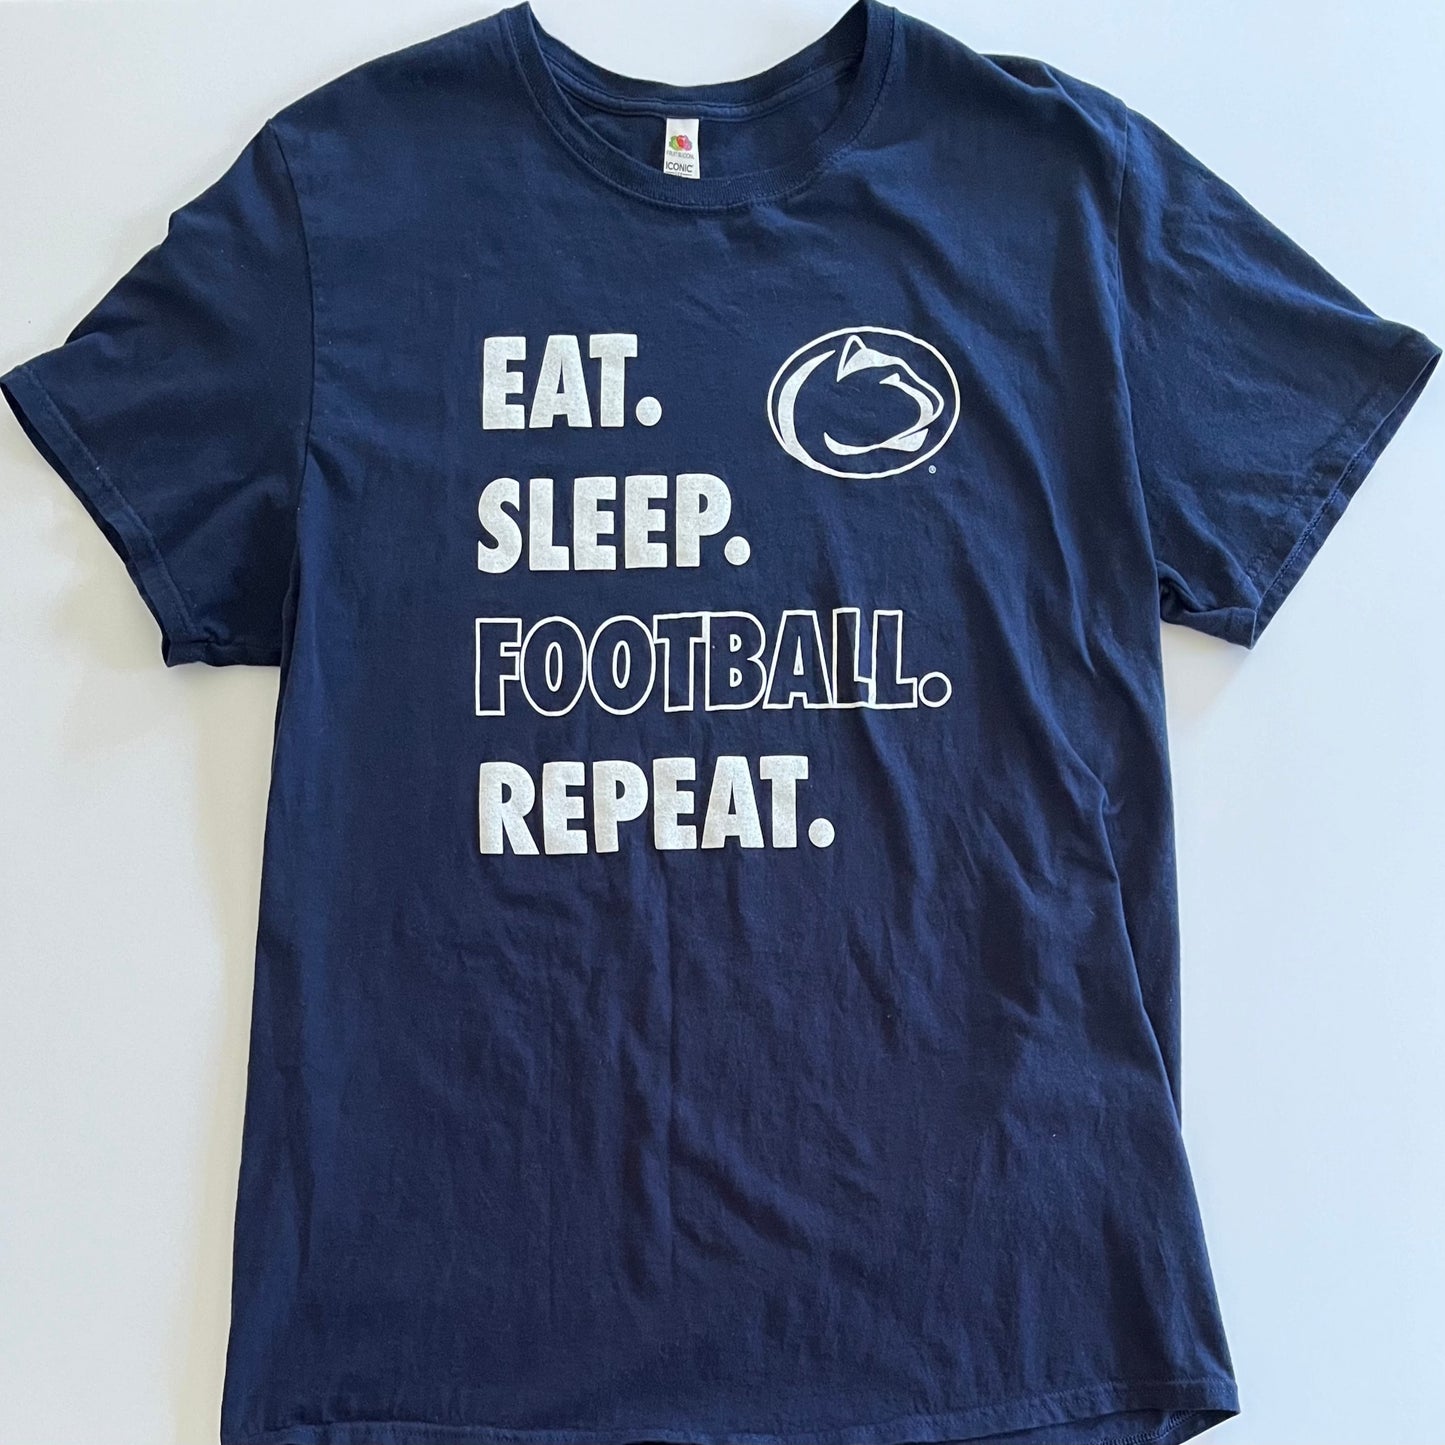 Penn State - Eat. Sleep. Football. Repeat. - Fruit of the Loom Tee (X-Large)